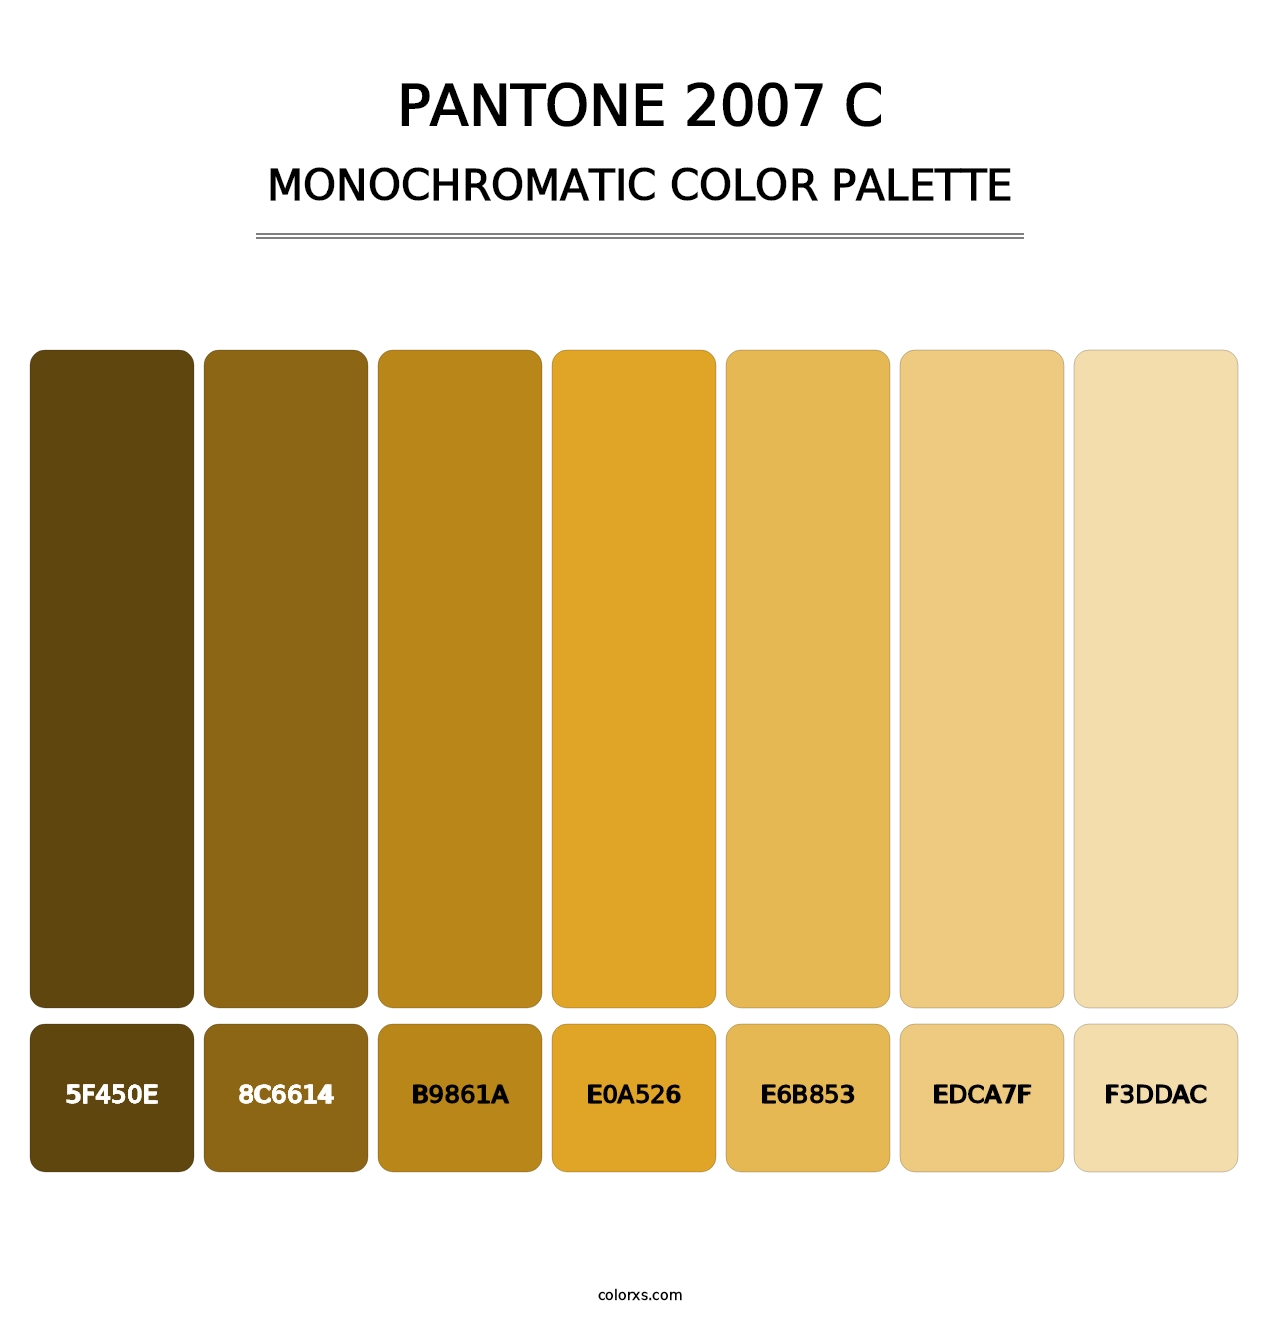 PANTONE 2007 C - Monochromatic Color Palette